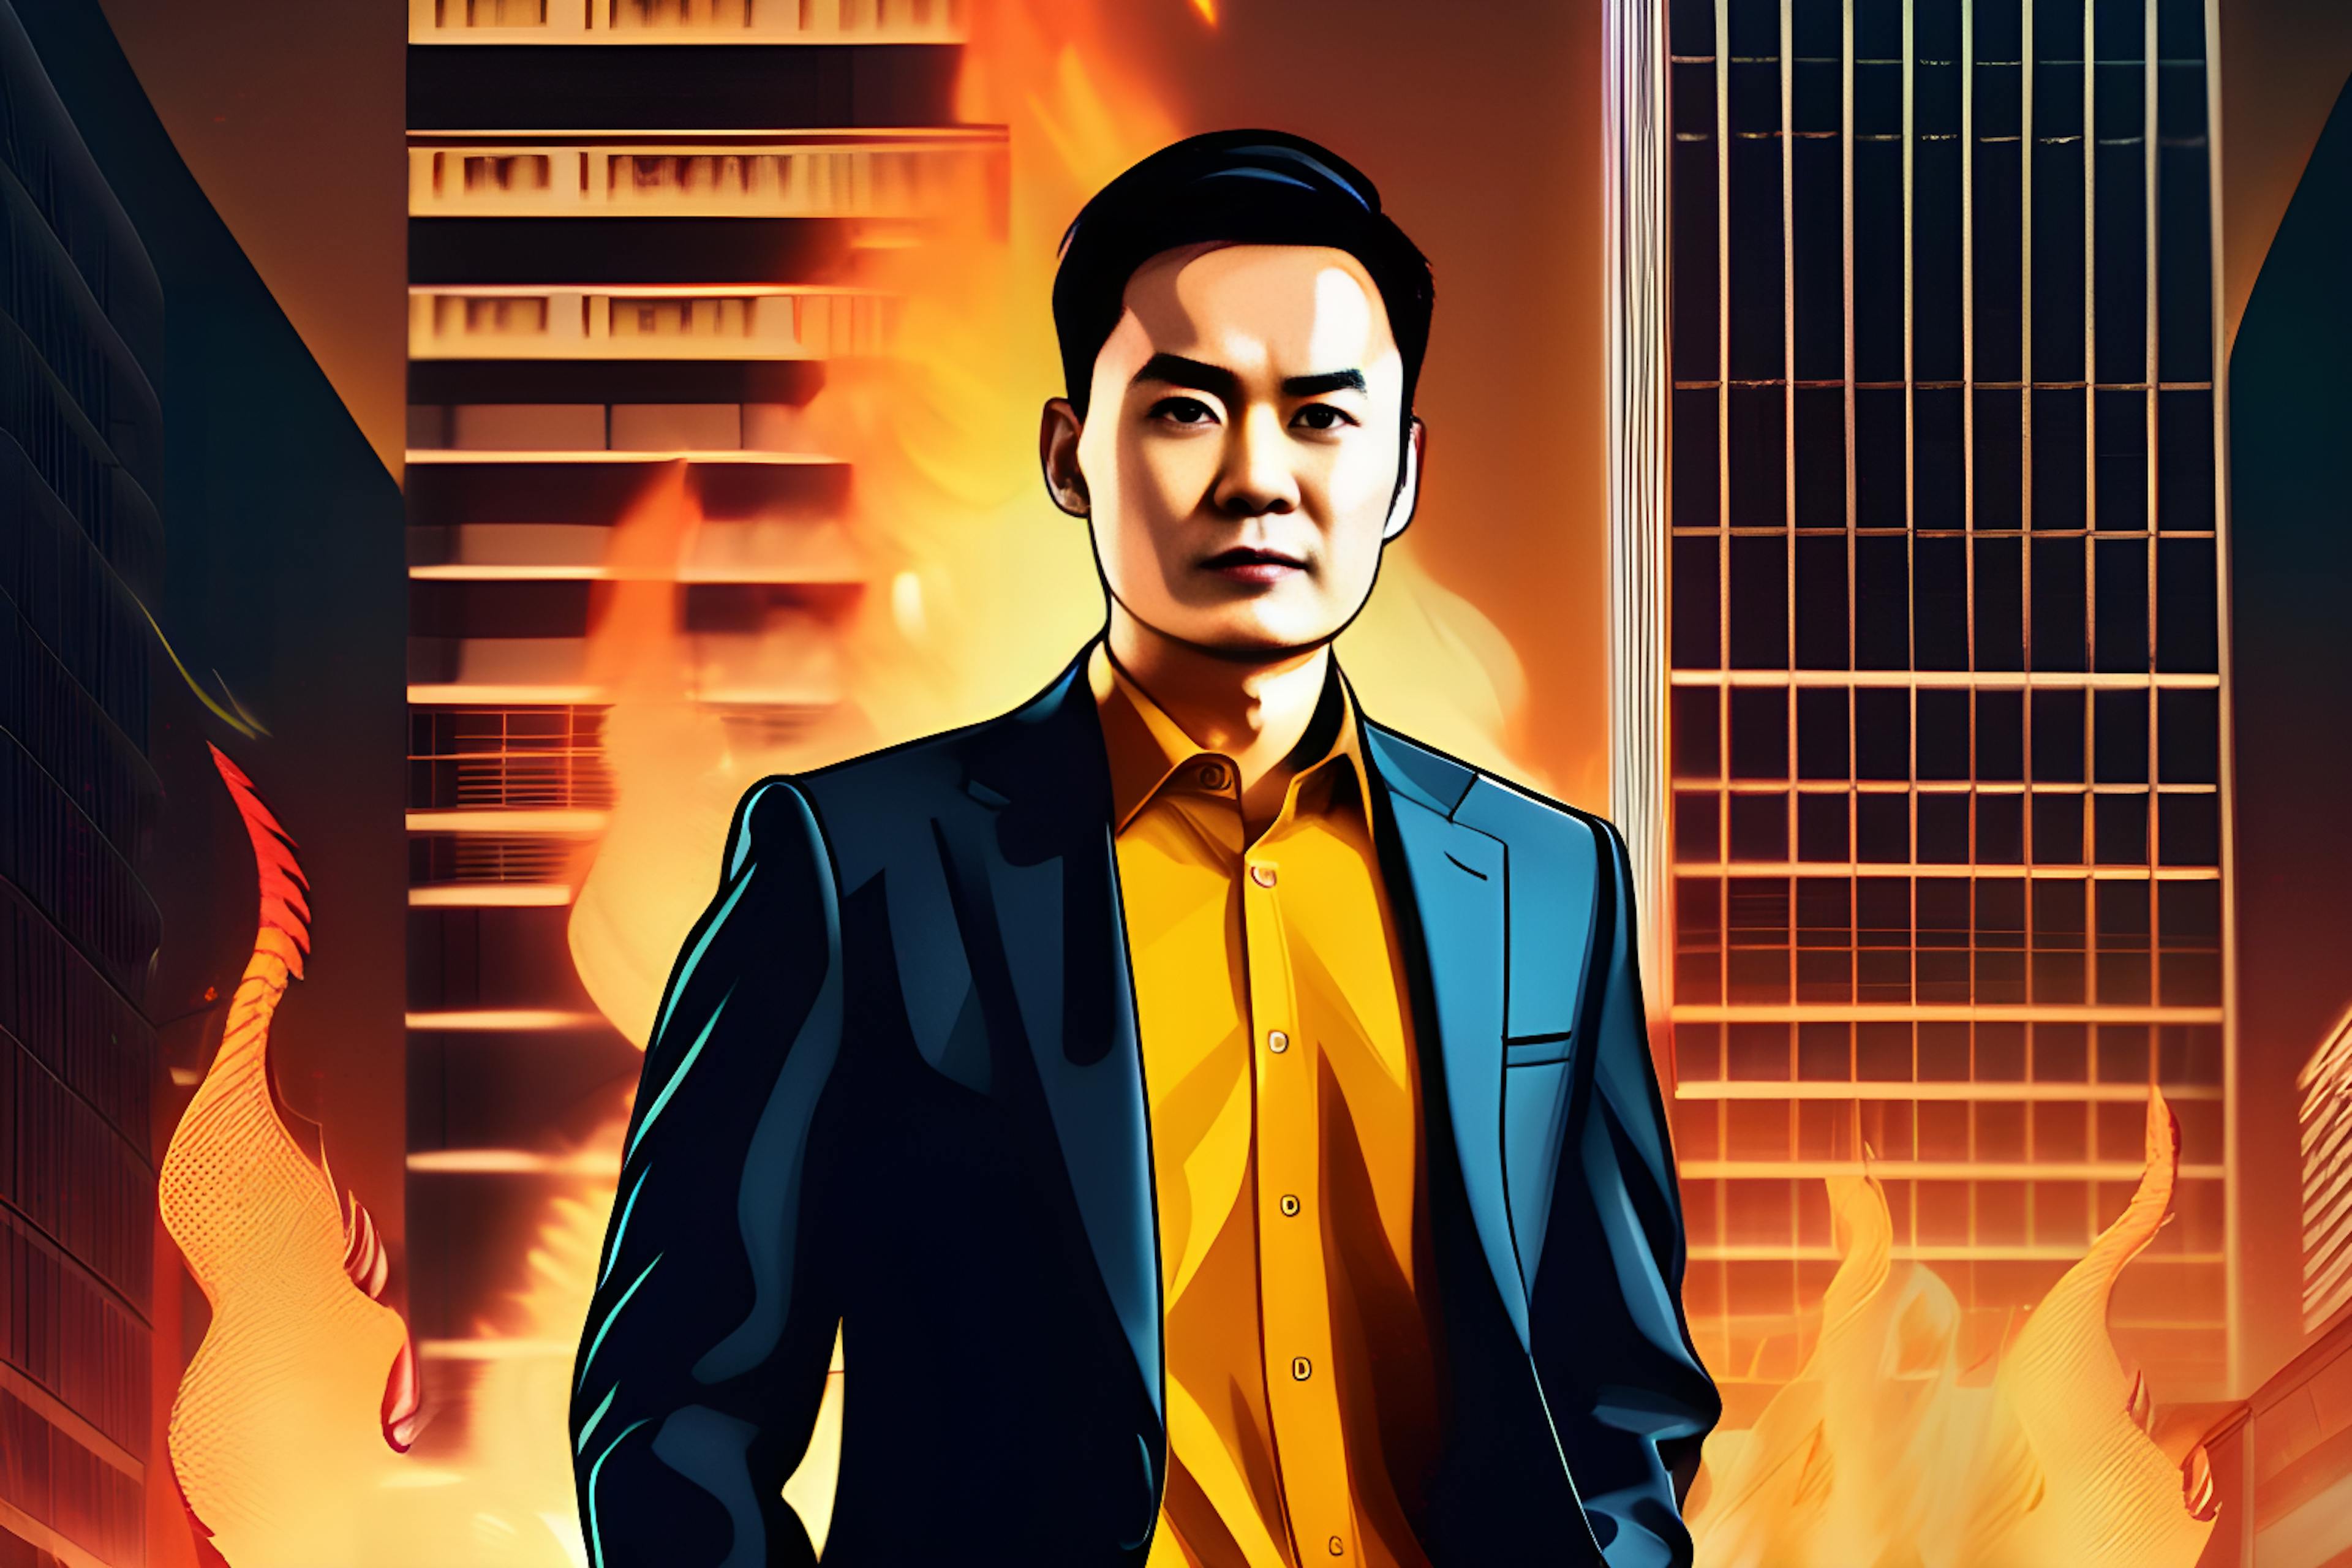 featured image - El CEO de Binance, Zhao, bajo fuego por "no actuar de buena fe"